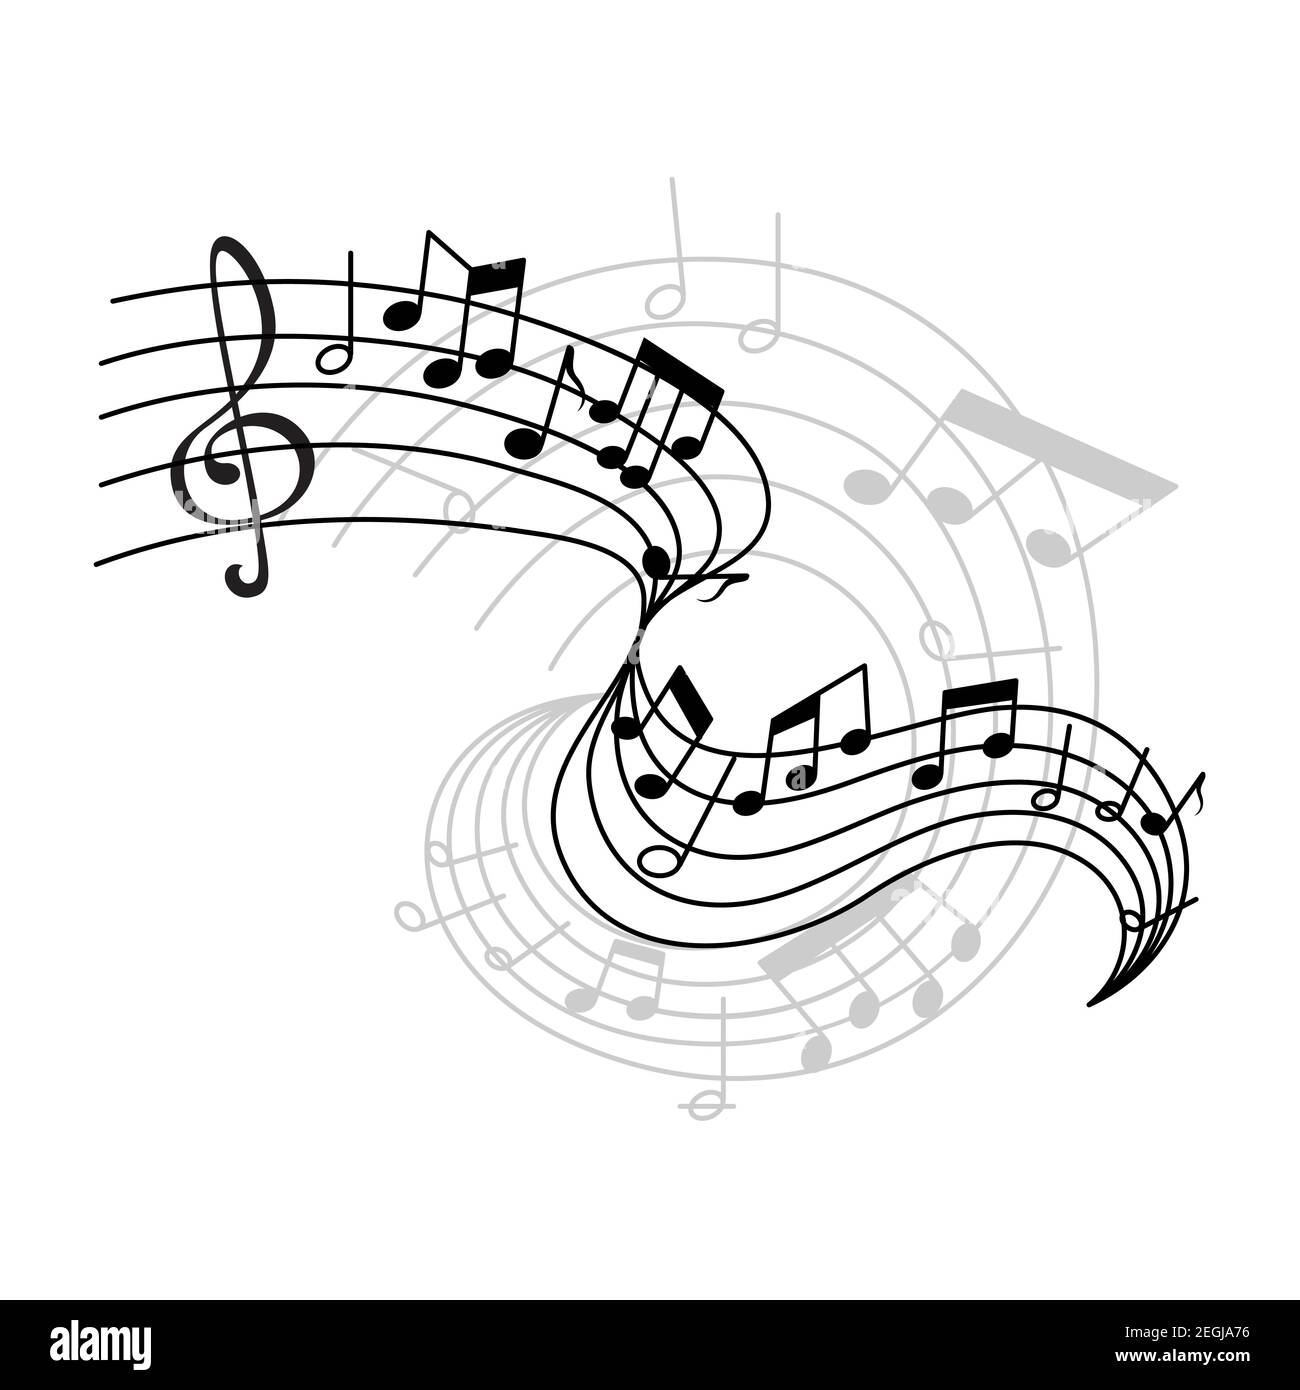 Notenstab oder Notenstave Noten und Schlüssel für musikalische Konzeptgestaltung. Vector Poster oder Ikone der musikalischen Notizen auf Mitarbeiter für Jazz-Nacht oder klassische op Stock Vektor